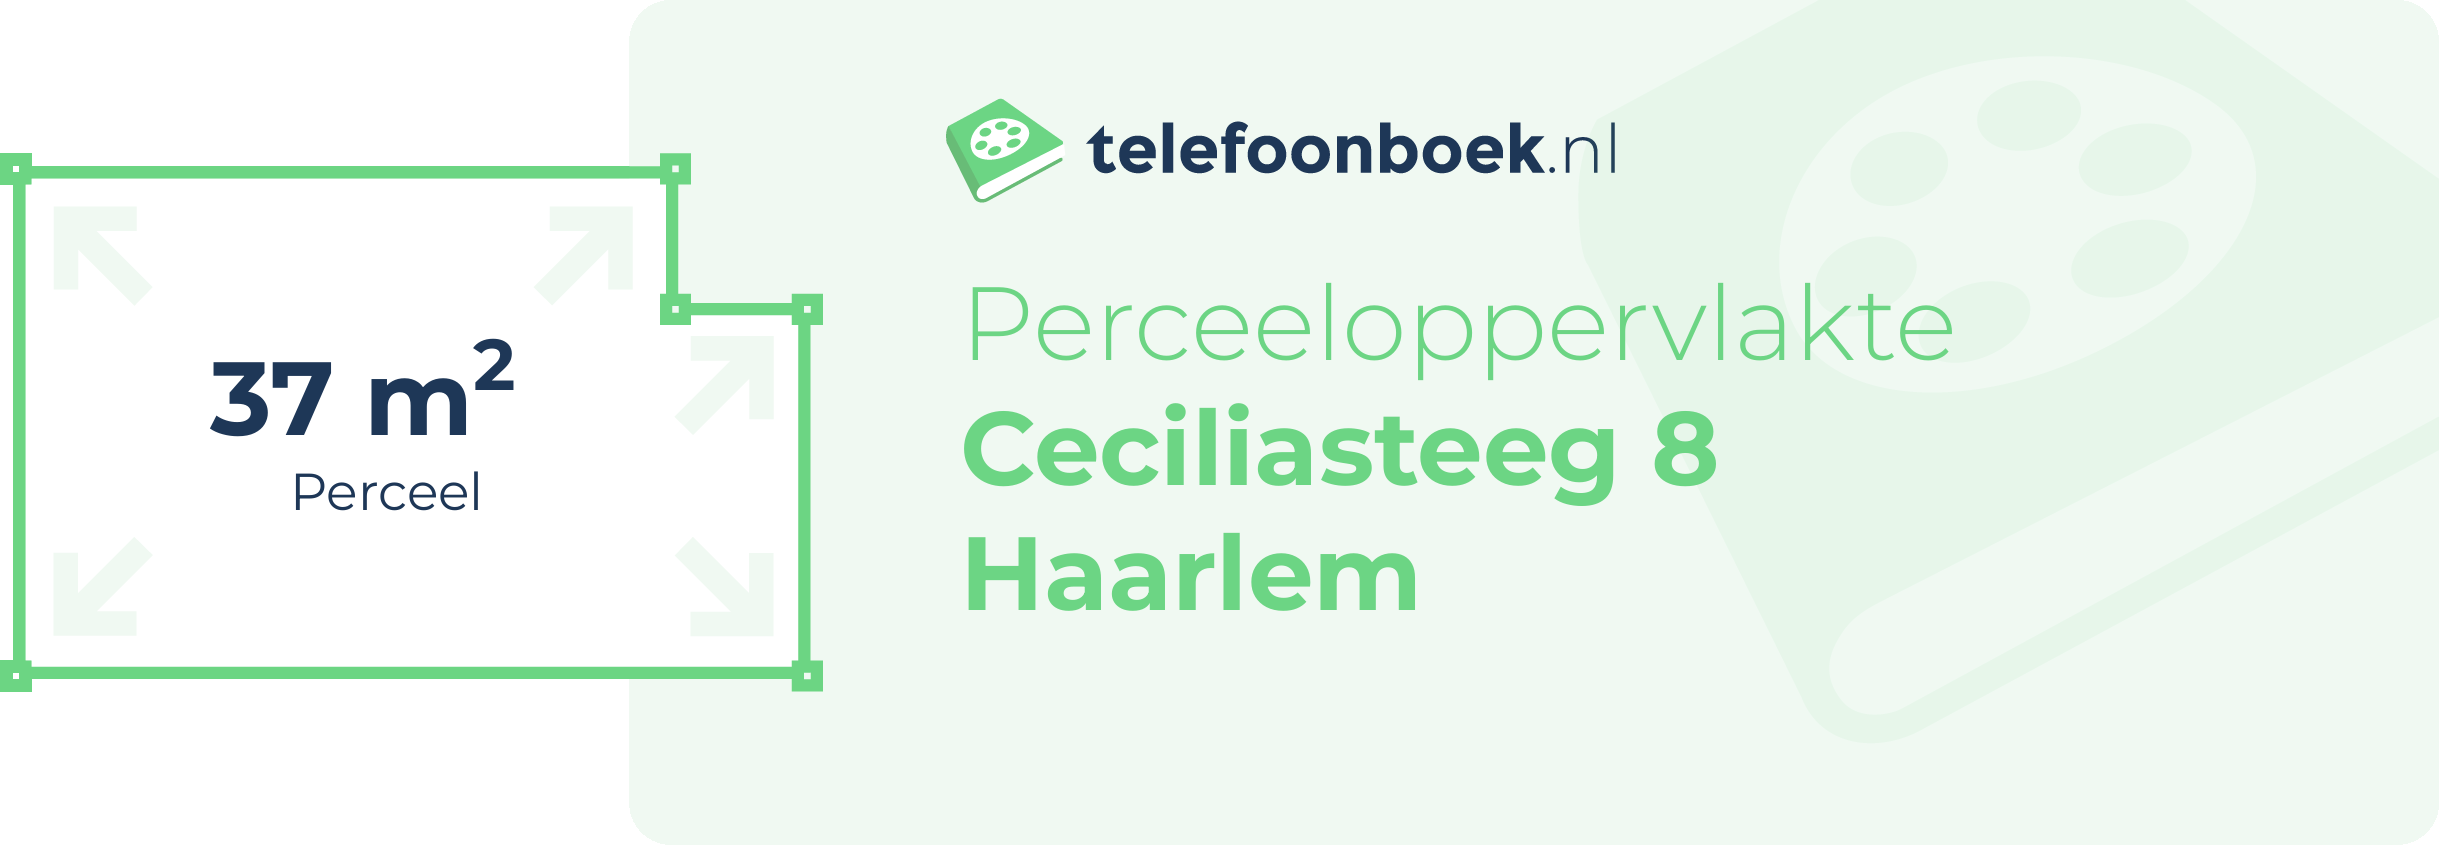 Perceeloppervlakte Ceciliasteeg 8 Haarlem